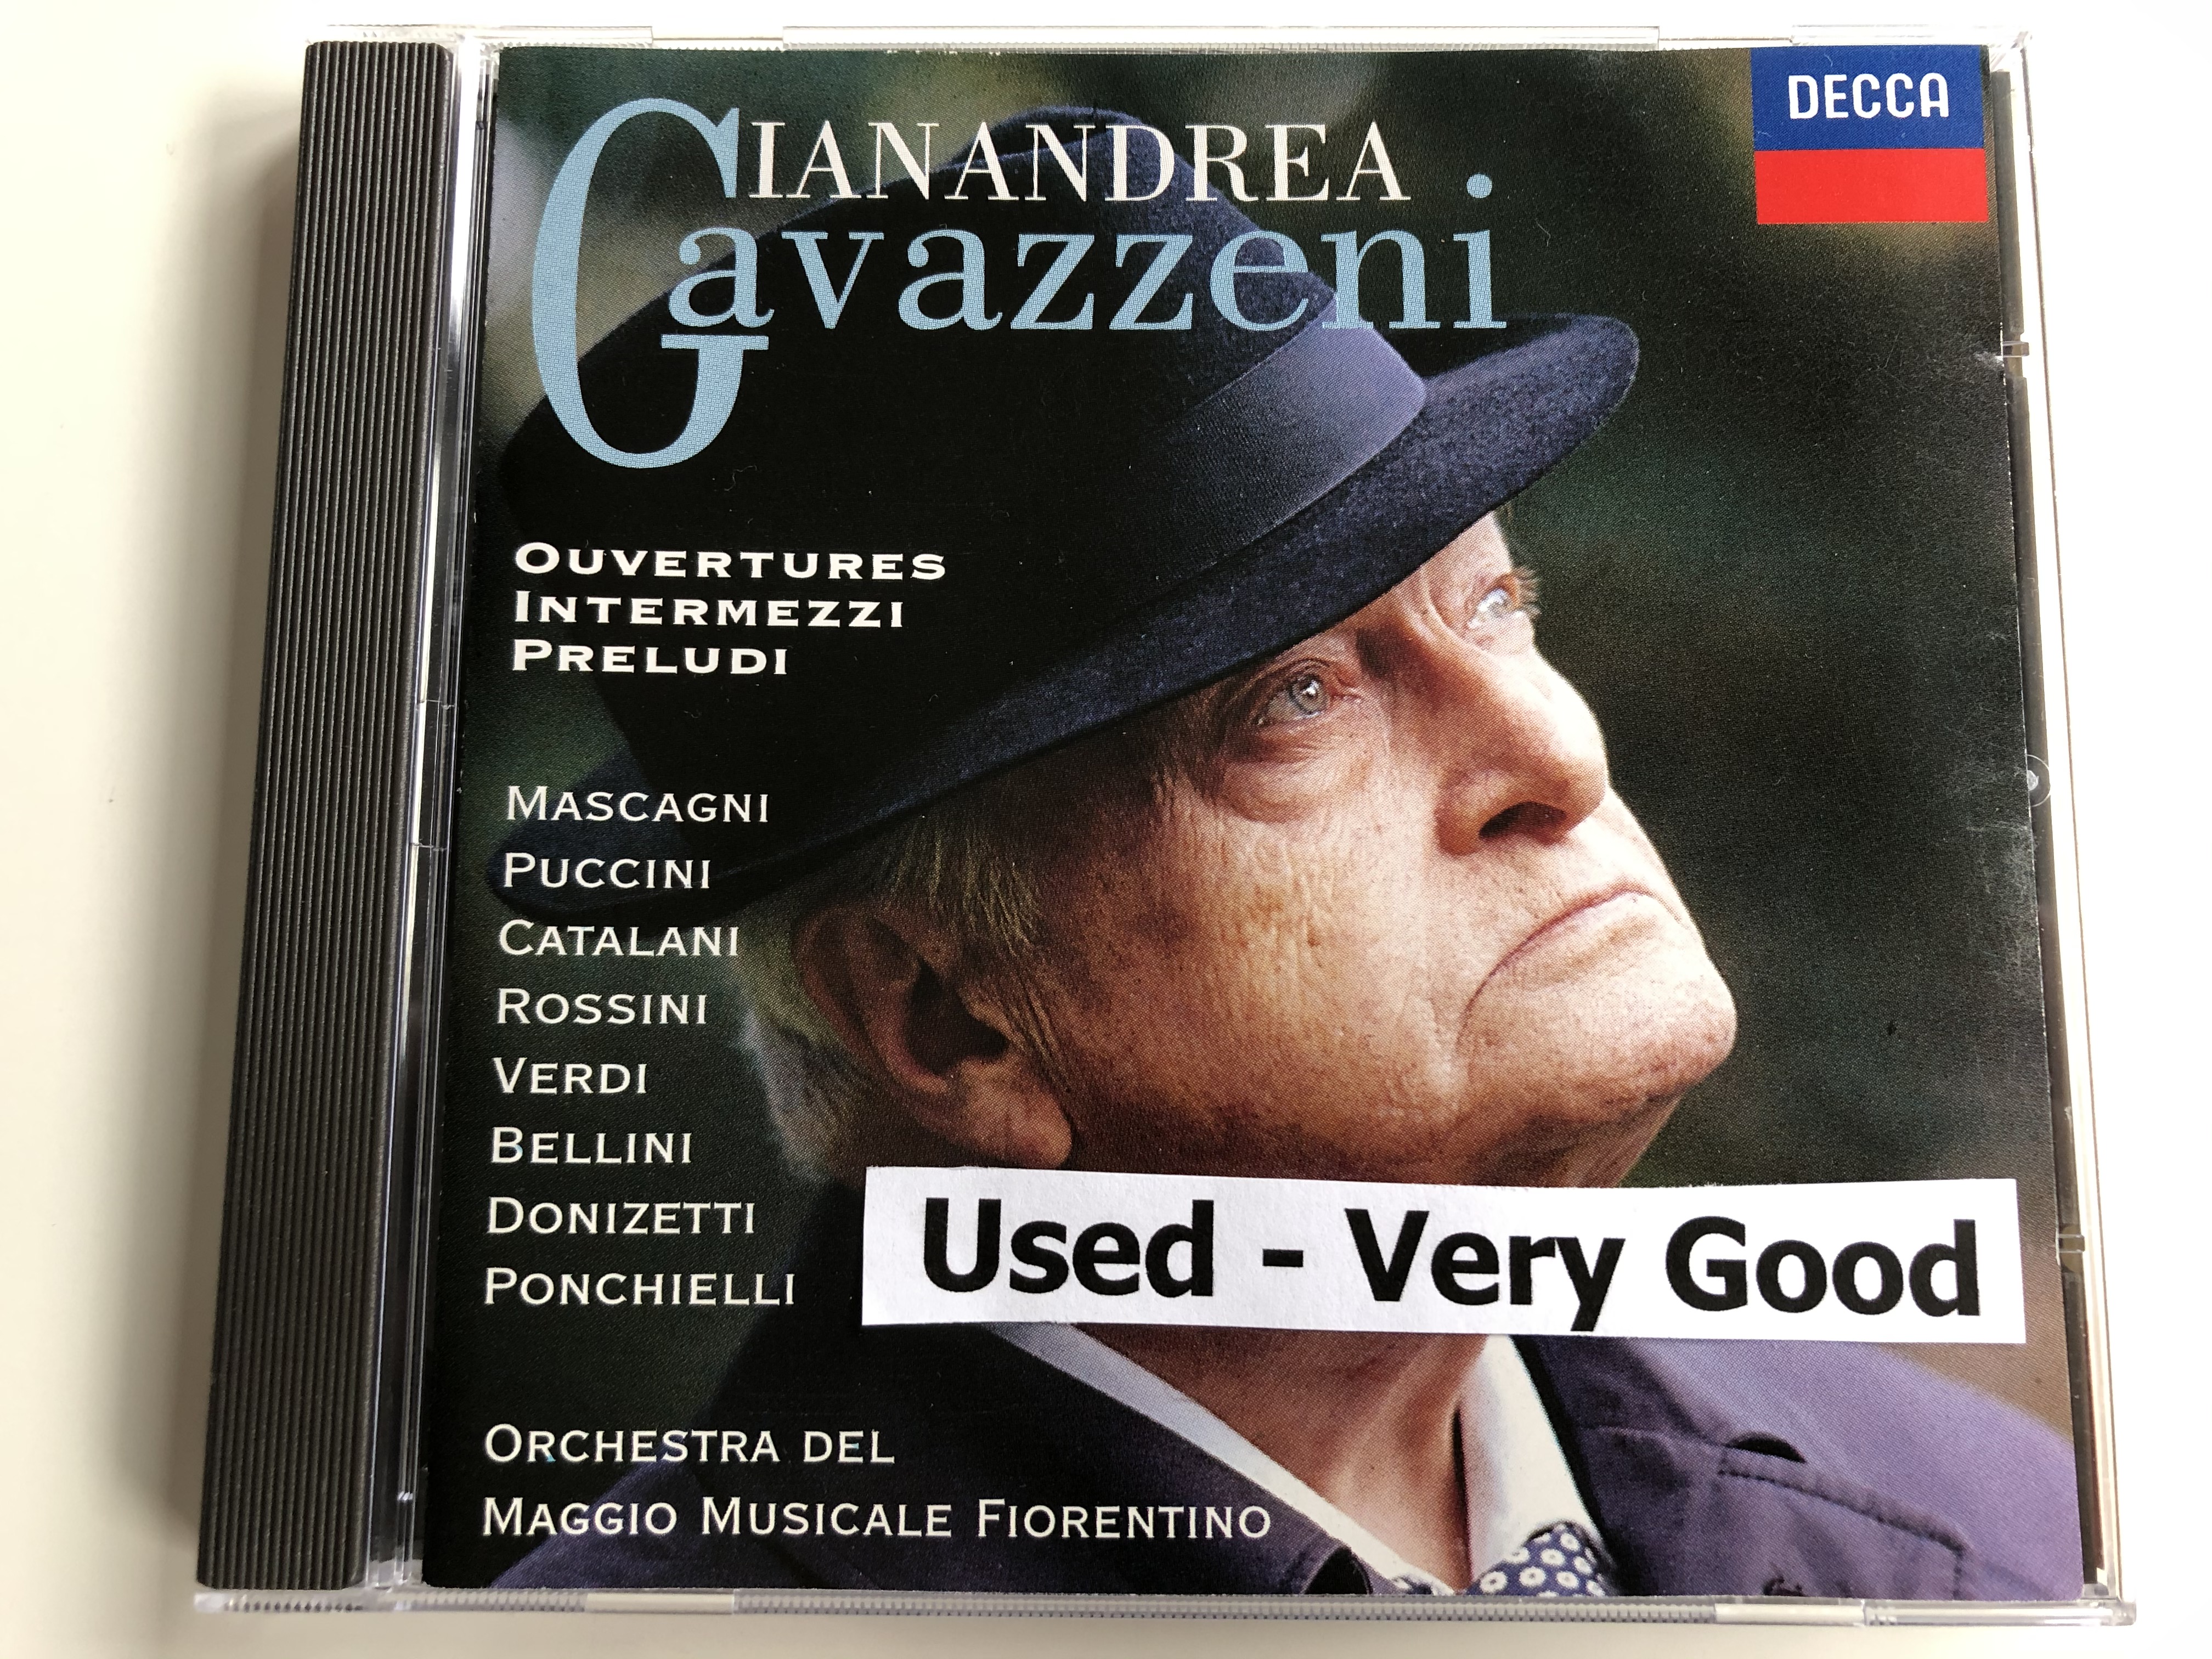 gianandrea-gavazzeni-ouvertures-intermezzi-preludi-mascagni-puccini-catalani-rossini-verdi-bellini-donizetti-ponchielli-orchestra-del-maggio-musicale-fiorentino-decca-audio-cd-1996-1-.jpg